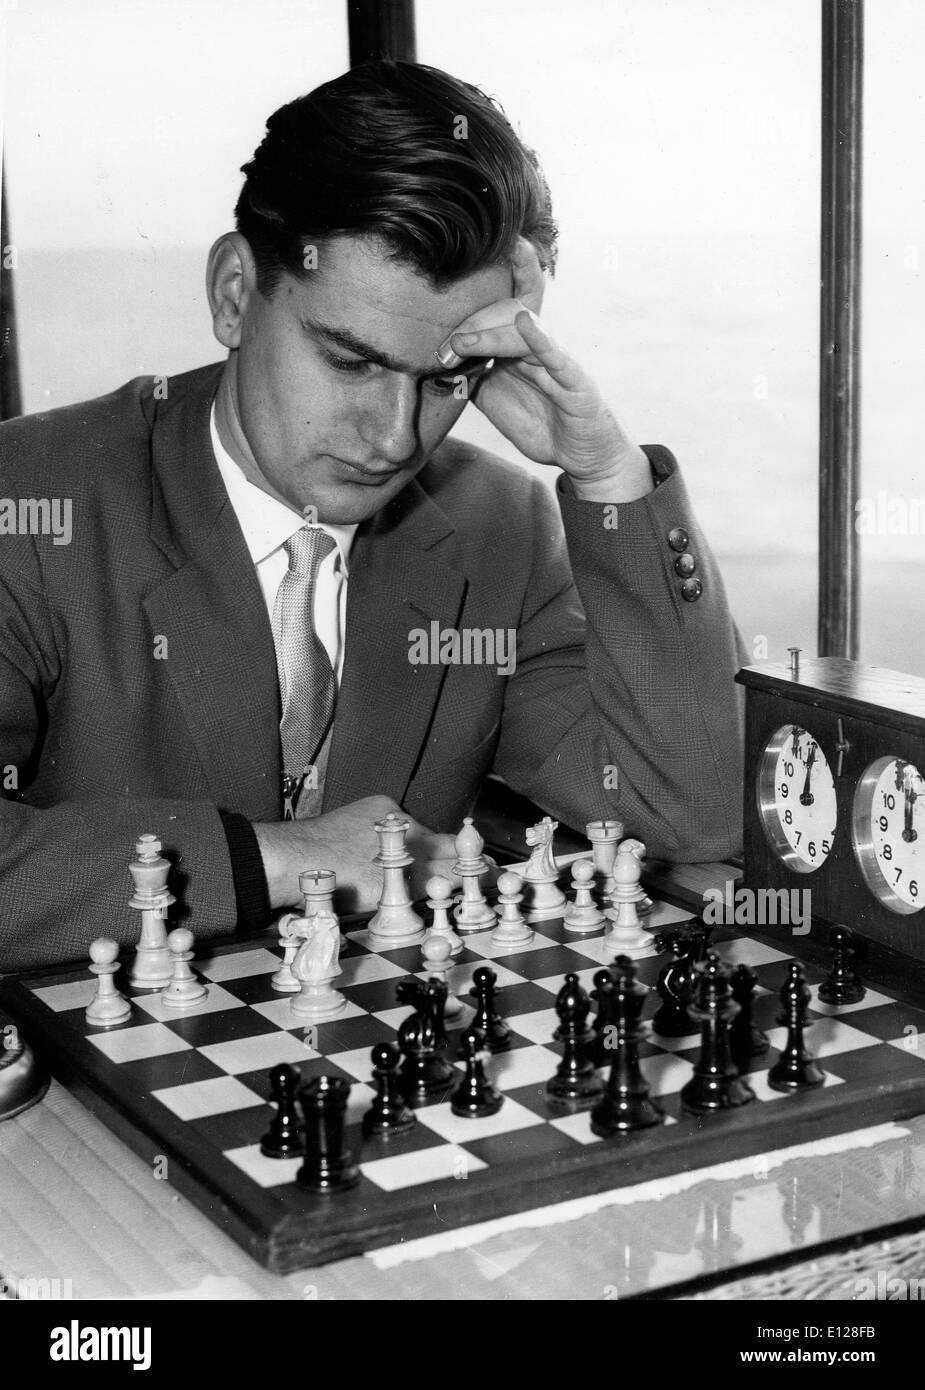 01 Apr, 2009 - Londres, Inglaterra, Reino Unido - KLAUS DARGA. Viktor Klaus Darga (nacido el 24 de febrero de 1934 en Berlín, Alemania) es un jugador de ajedrez, el gran maestro alemán. (Crédito de la imagen: imágenes de KEYSTONE USA/ZUMAPRESS.com) Foto de stock